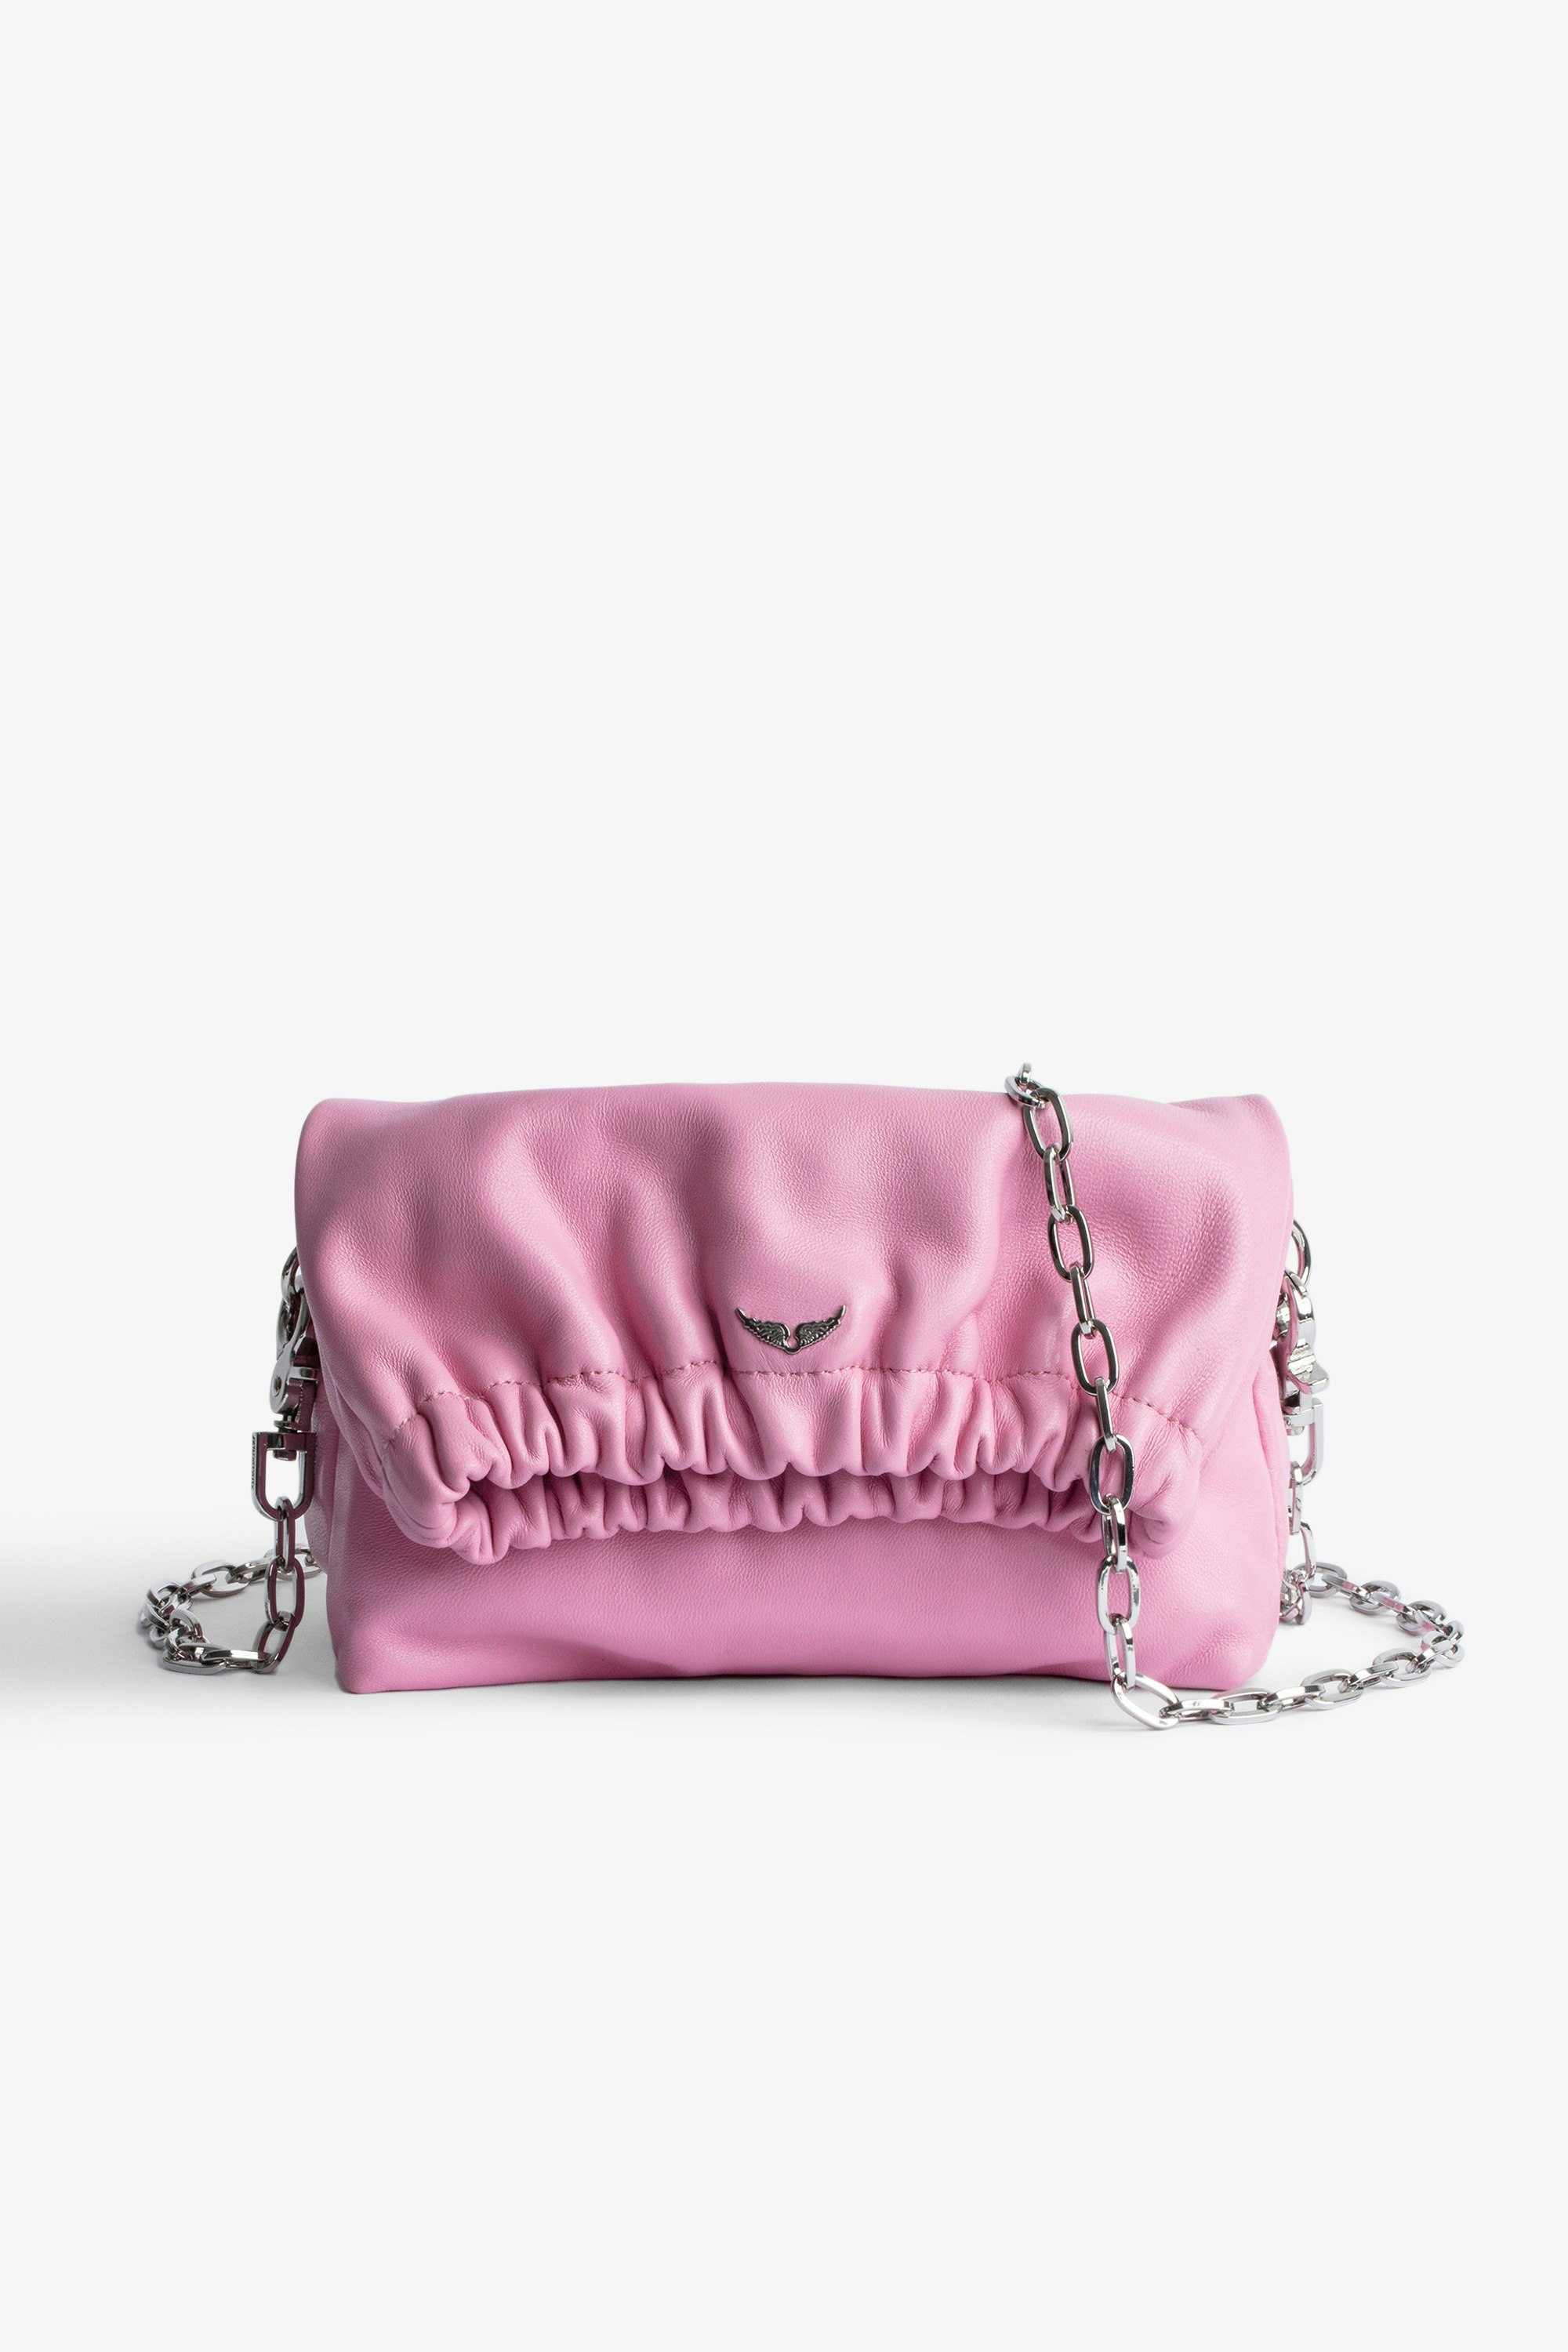 Tasche Rockyssime XS Kleine, rosafarbene Damentasche aus Lammleder